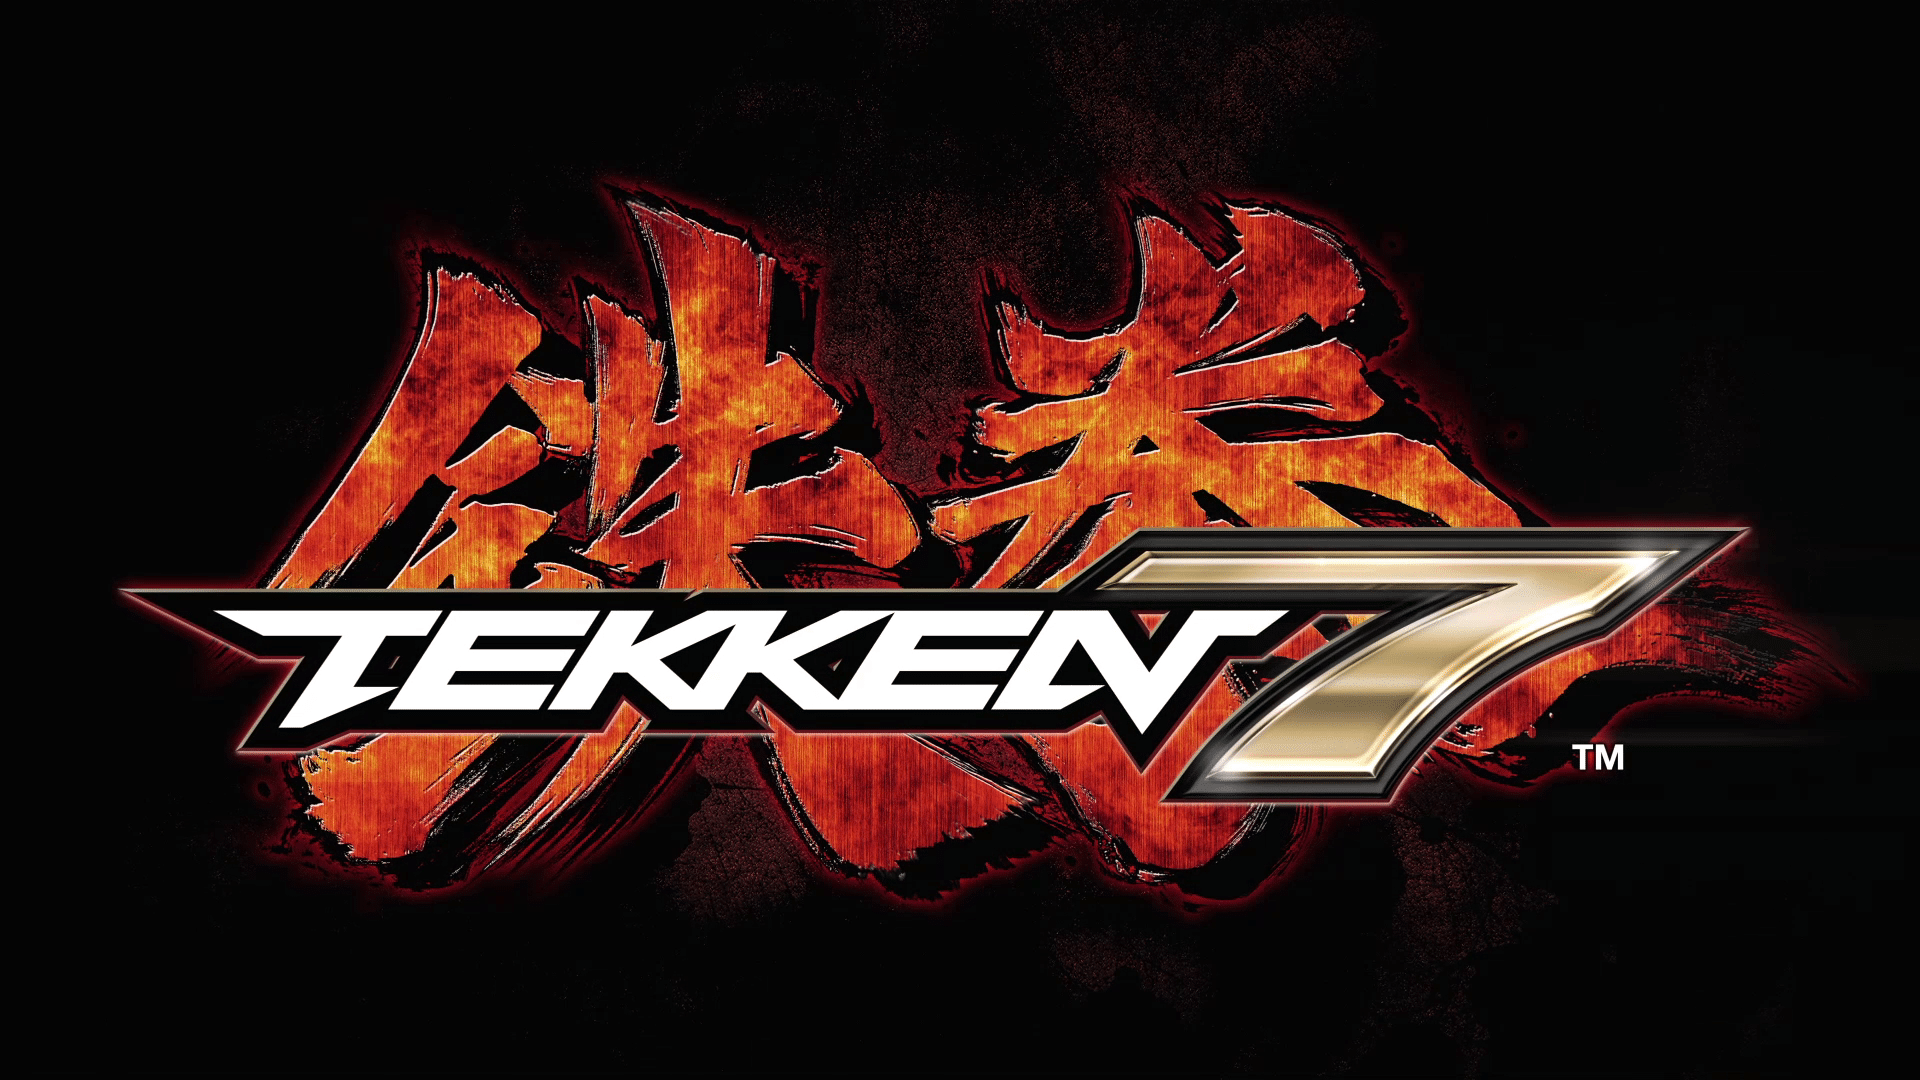 Chequea el Spot de Televisión de Tekken 7